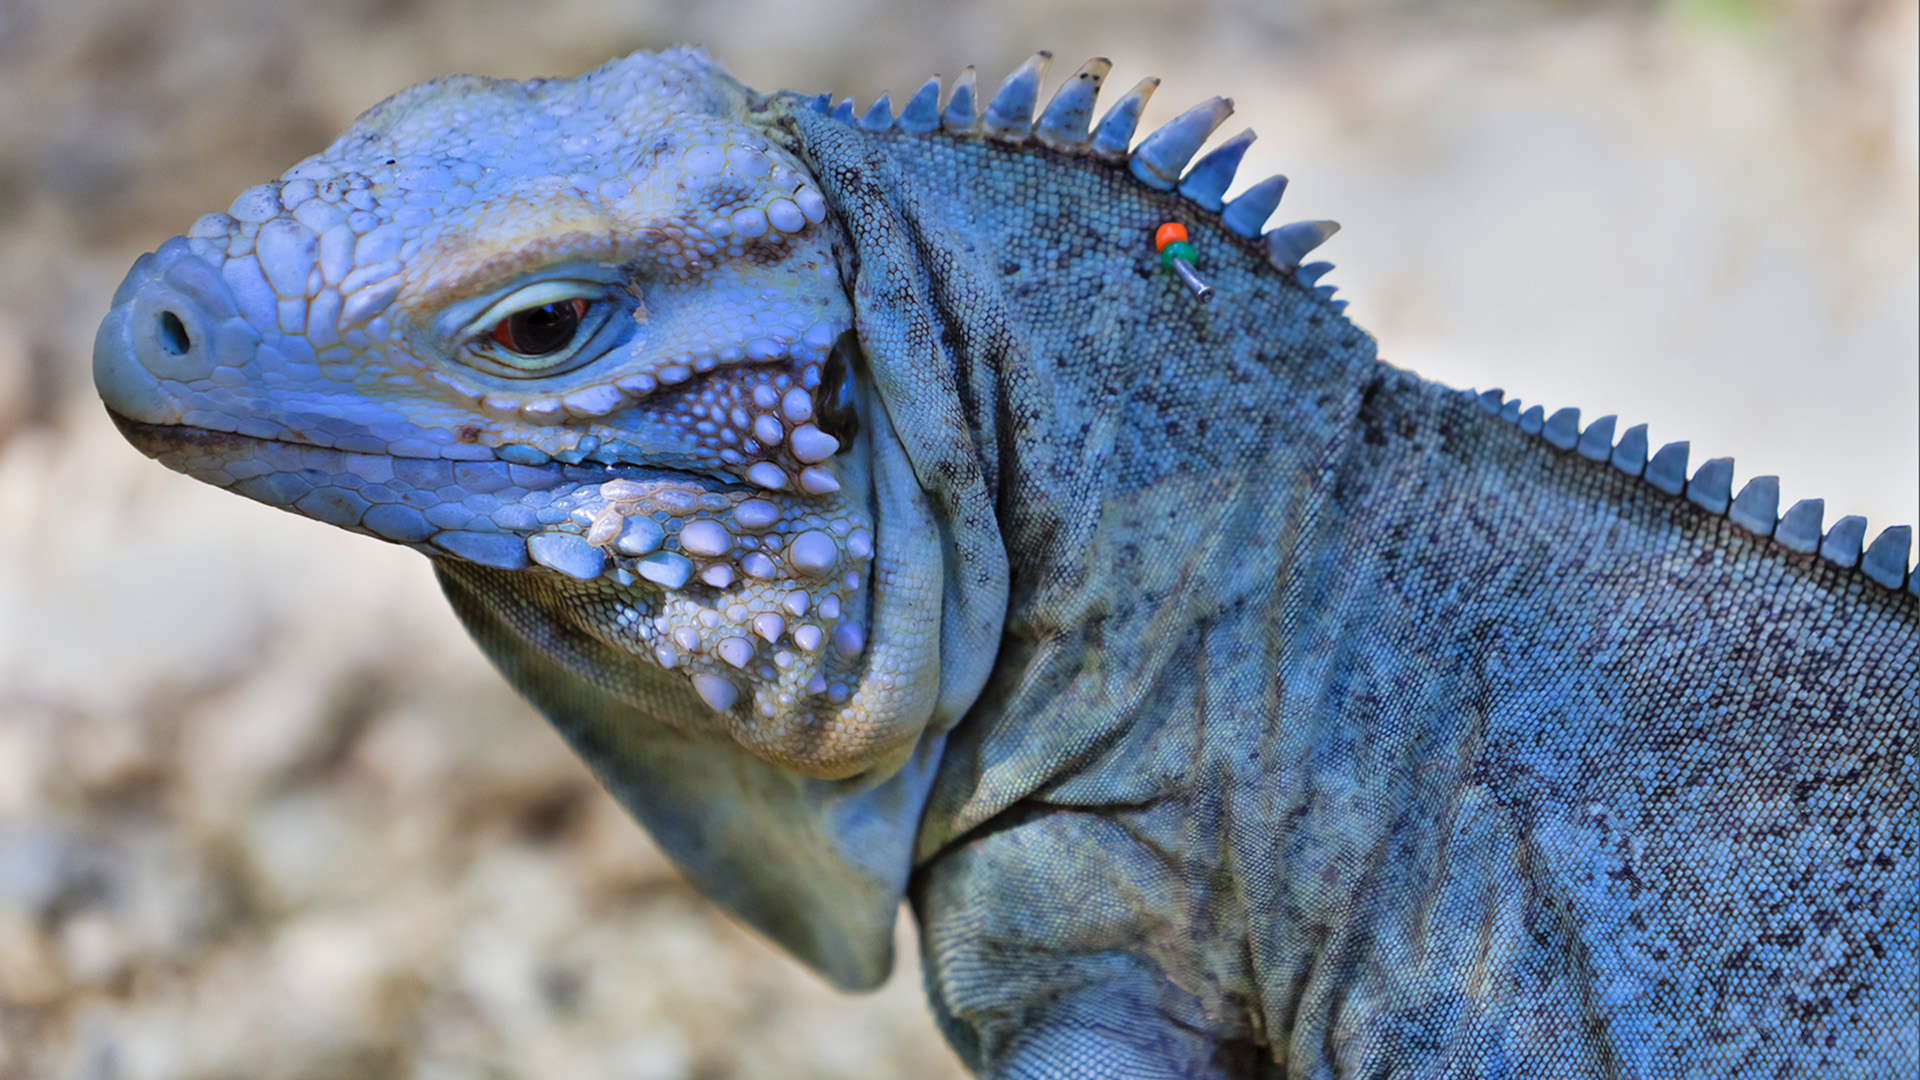 The rare blue iguana of the Cayman Islands is no longer so rare.